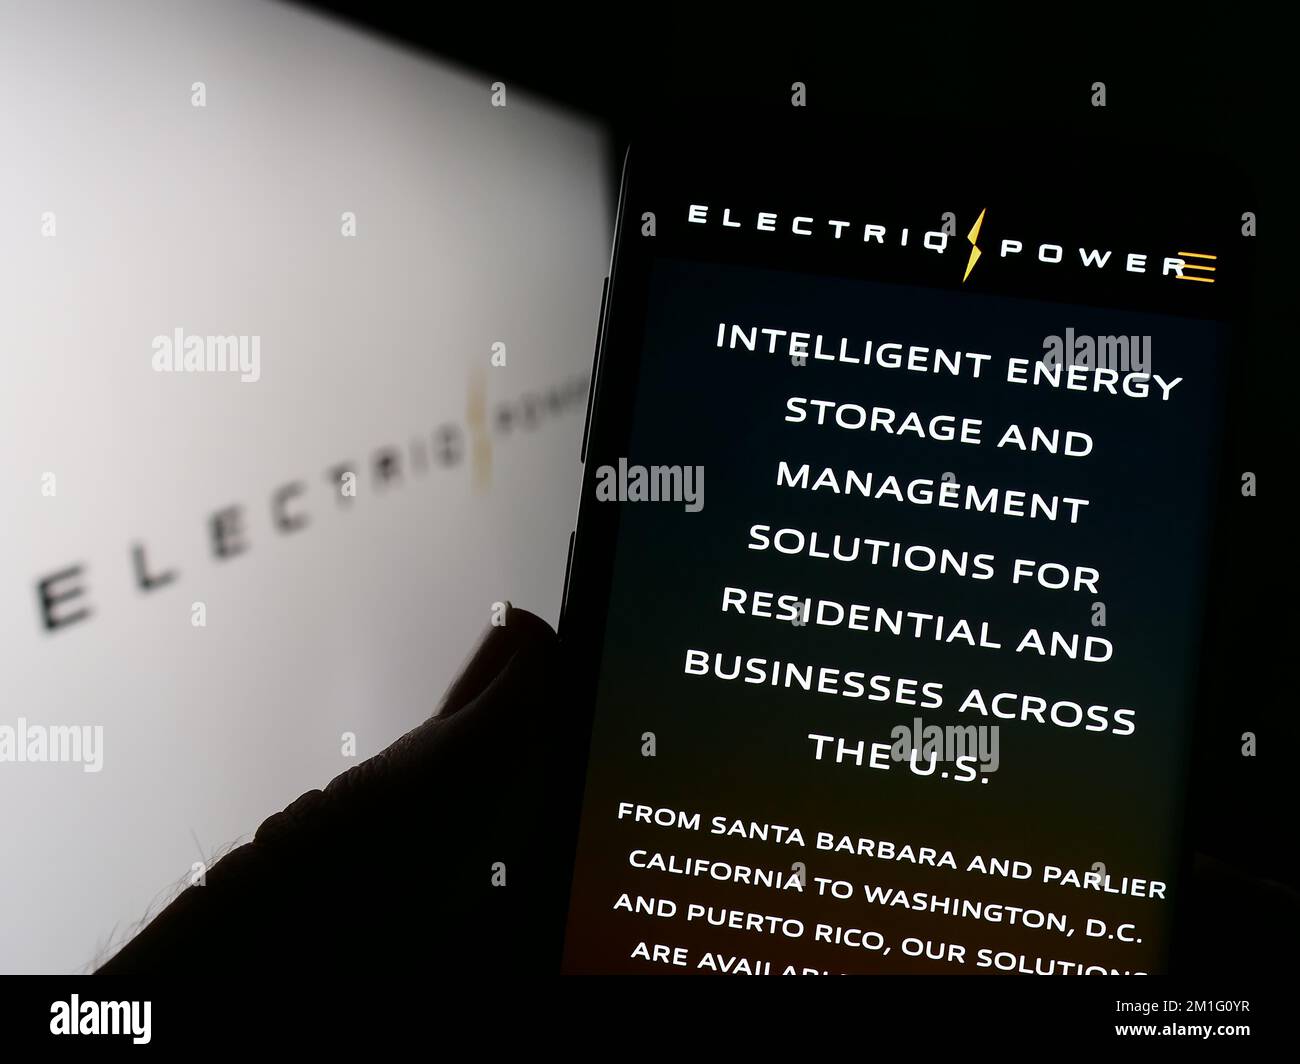 Persona che tiene il cellulare con la pagina web della società di immagazzinamento di energia americana Electriq Power Inc. Sullo schermo con il logo. Messa a fuoco al centro del display del telefono. Foto Stock